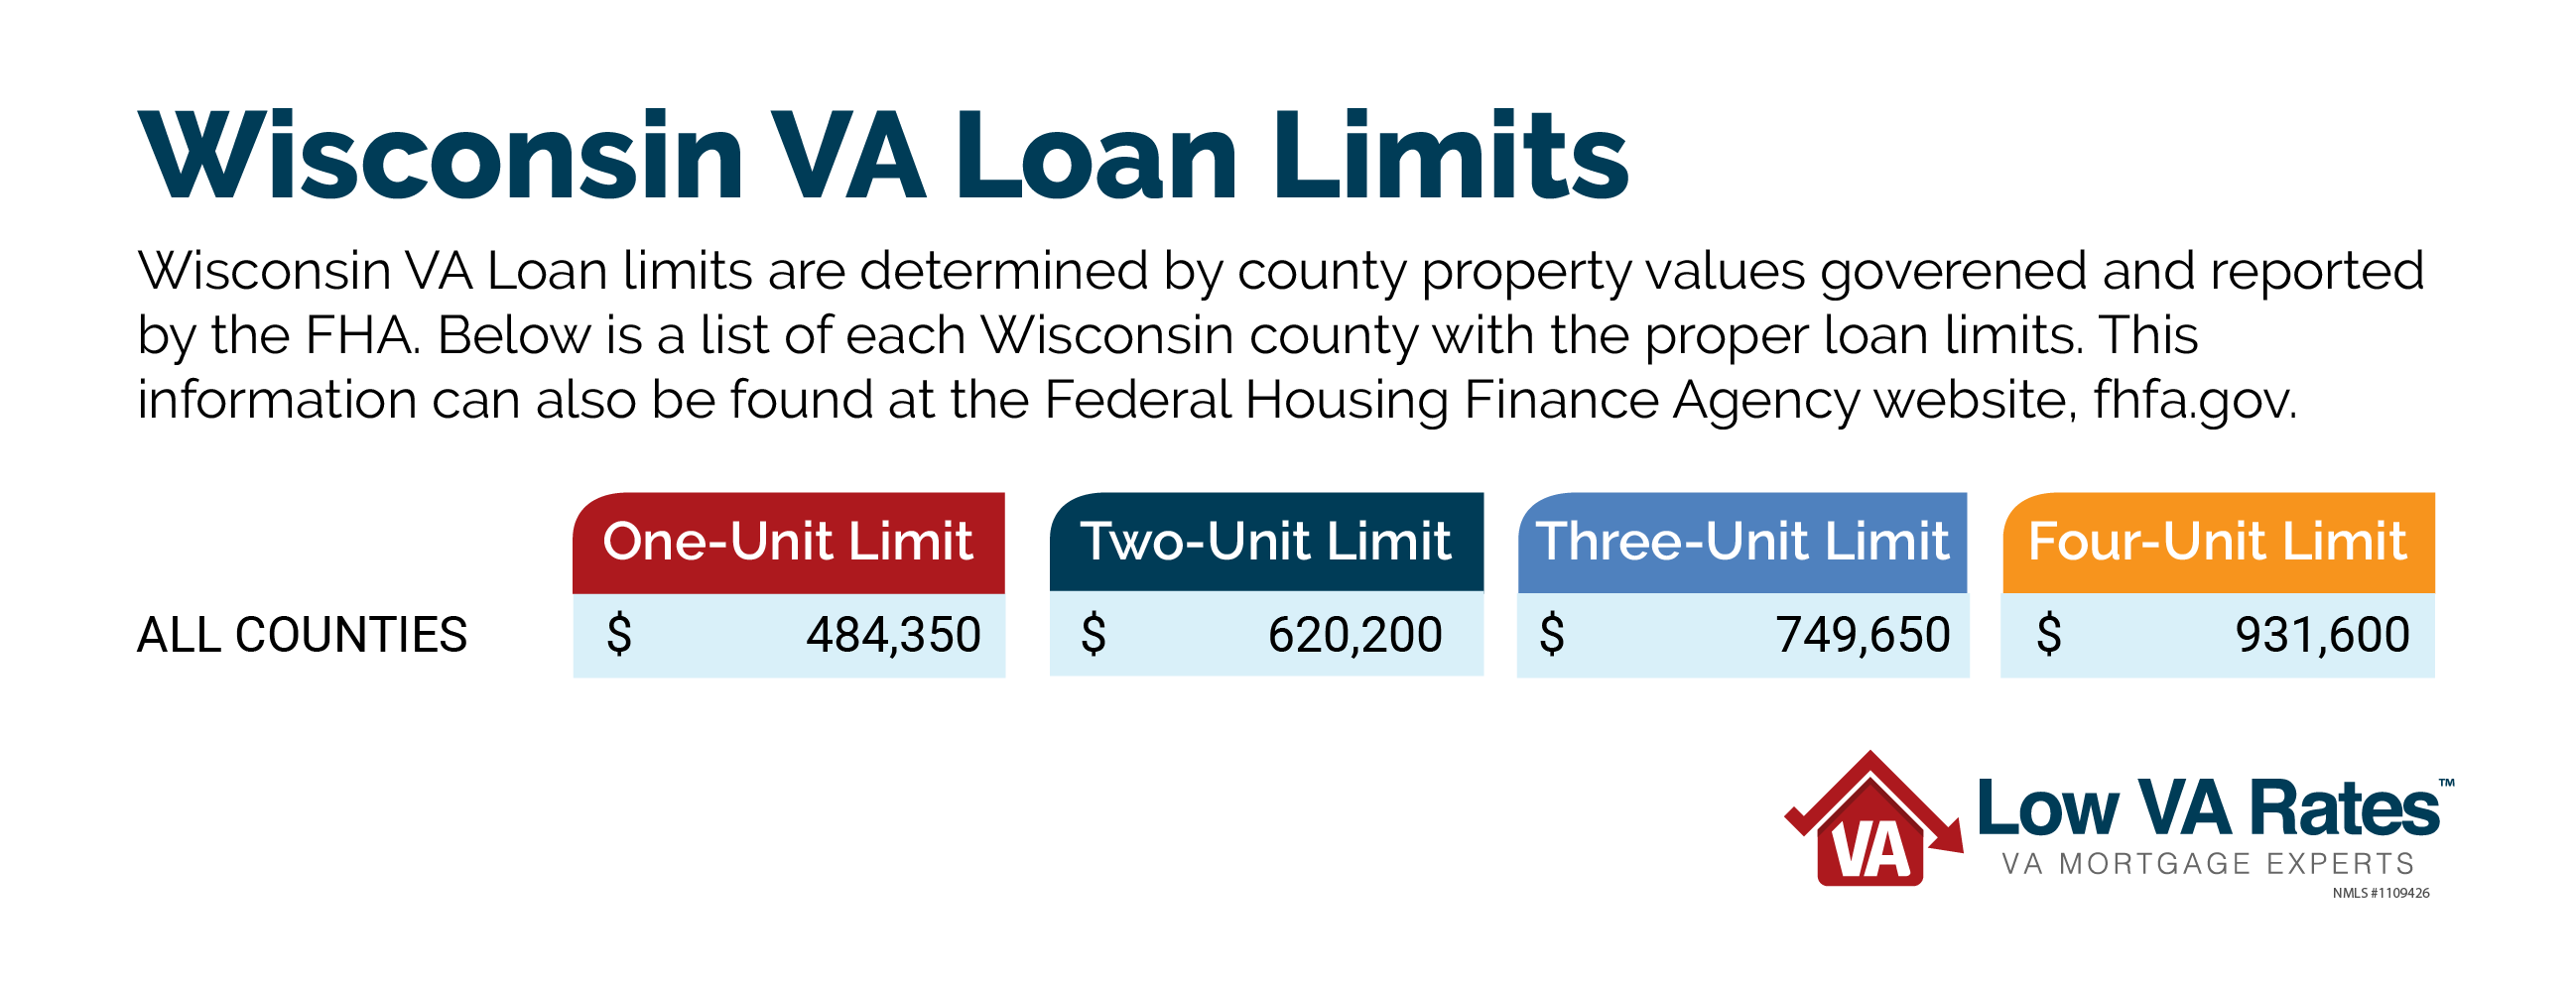 Wisconsin Benefits VA Home Loans in Wisconsin Low VA Rates